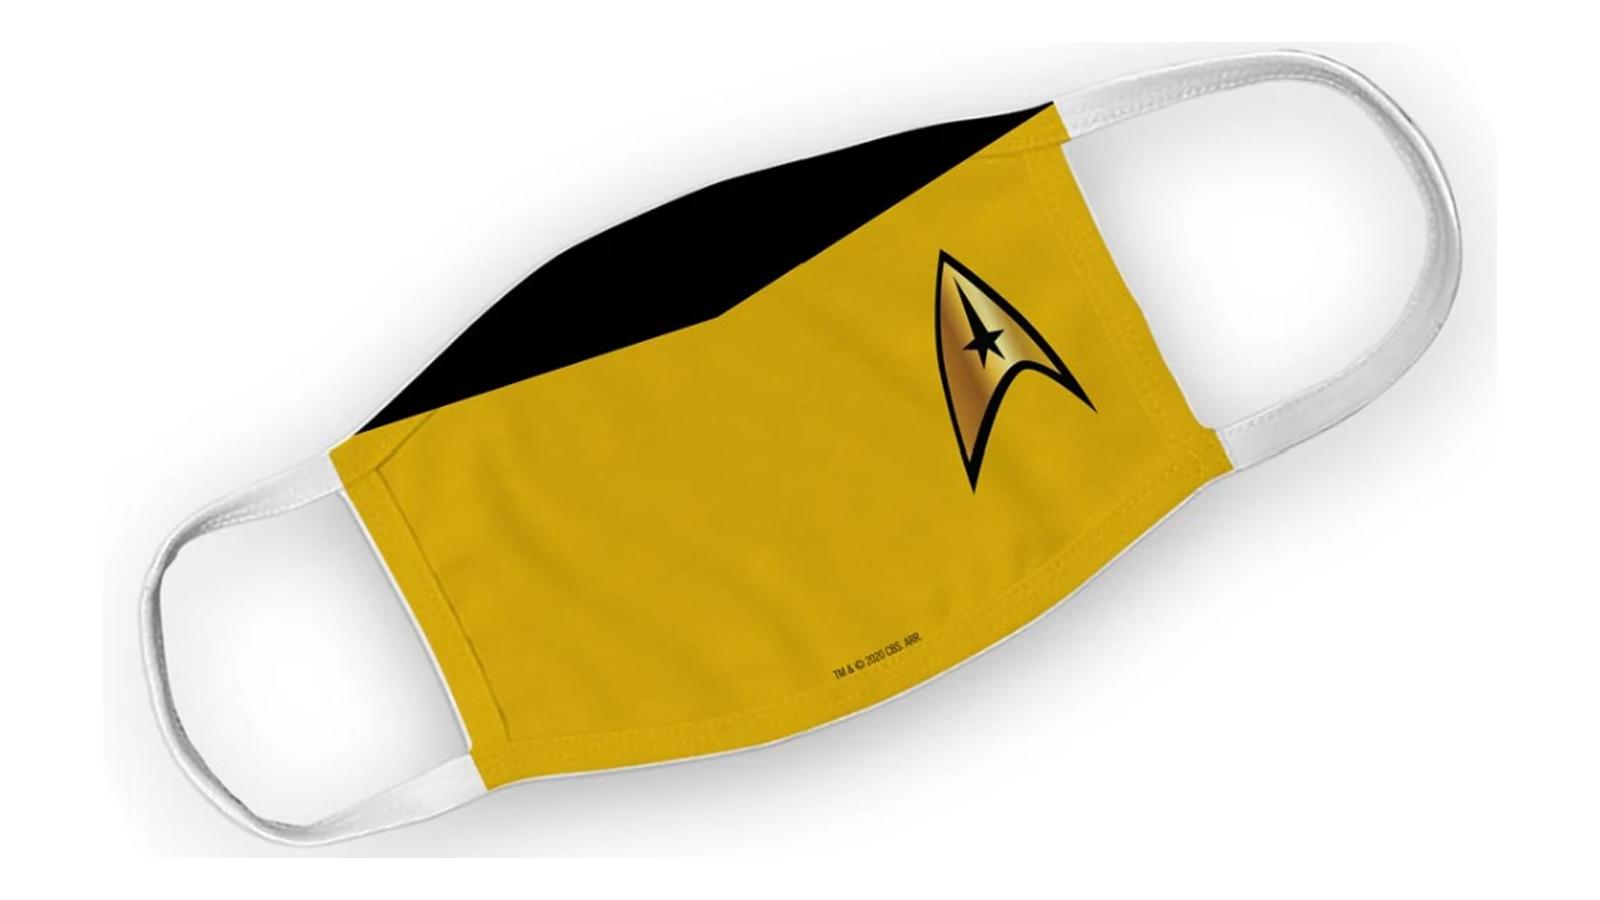 Masker wajah Star Trek terbaik seri asli generasi berikutnya kapten kirk spock picard kemeja merah